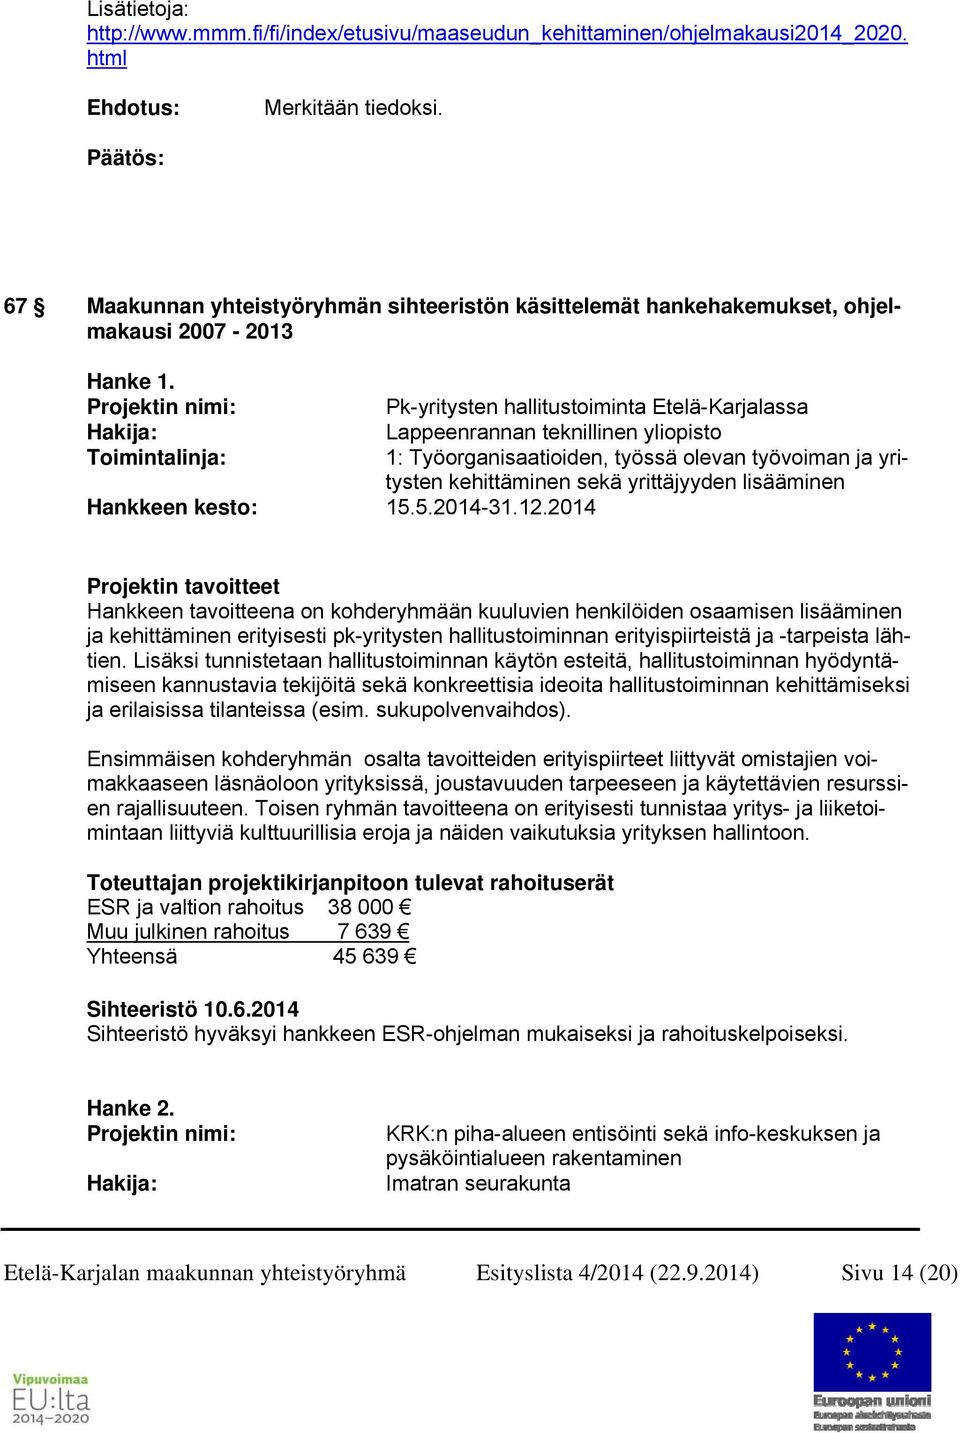 Projektin nimi: Pk-yritysten hallitustoiminta Etelä-Karjalassa Hakija: Lappeenrannan teknillinen yliopisto Toimintalinja: 1: Työorganisaatioiden, työssä olevan työvoiman ja yritysten kehittäminen